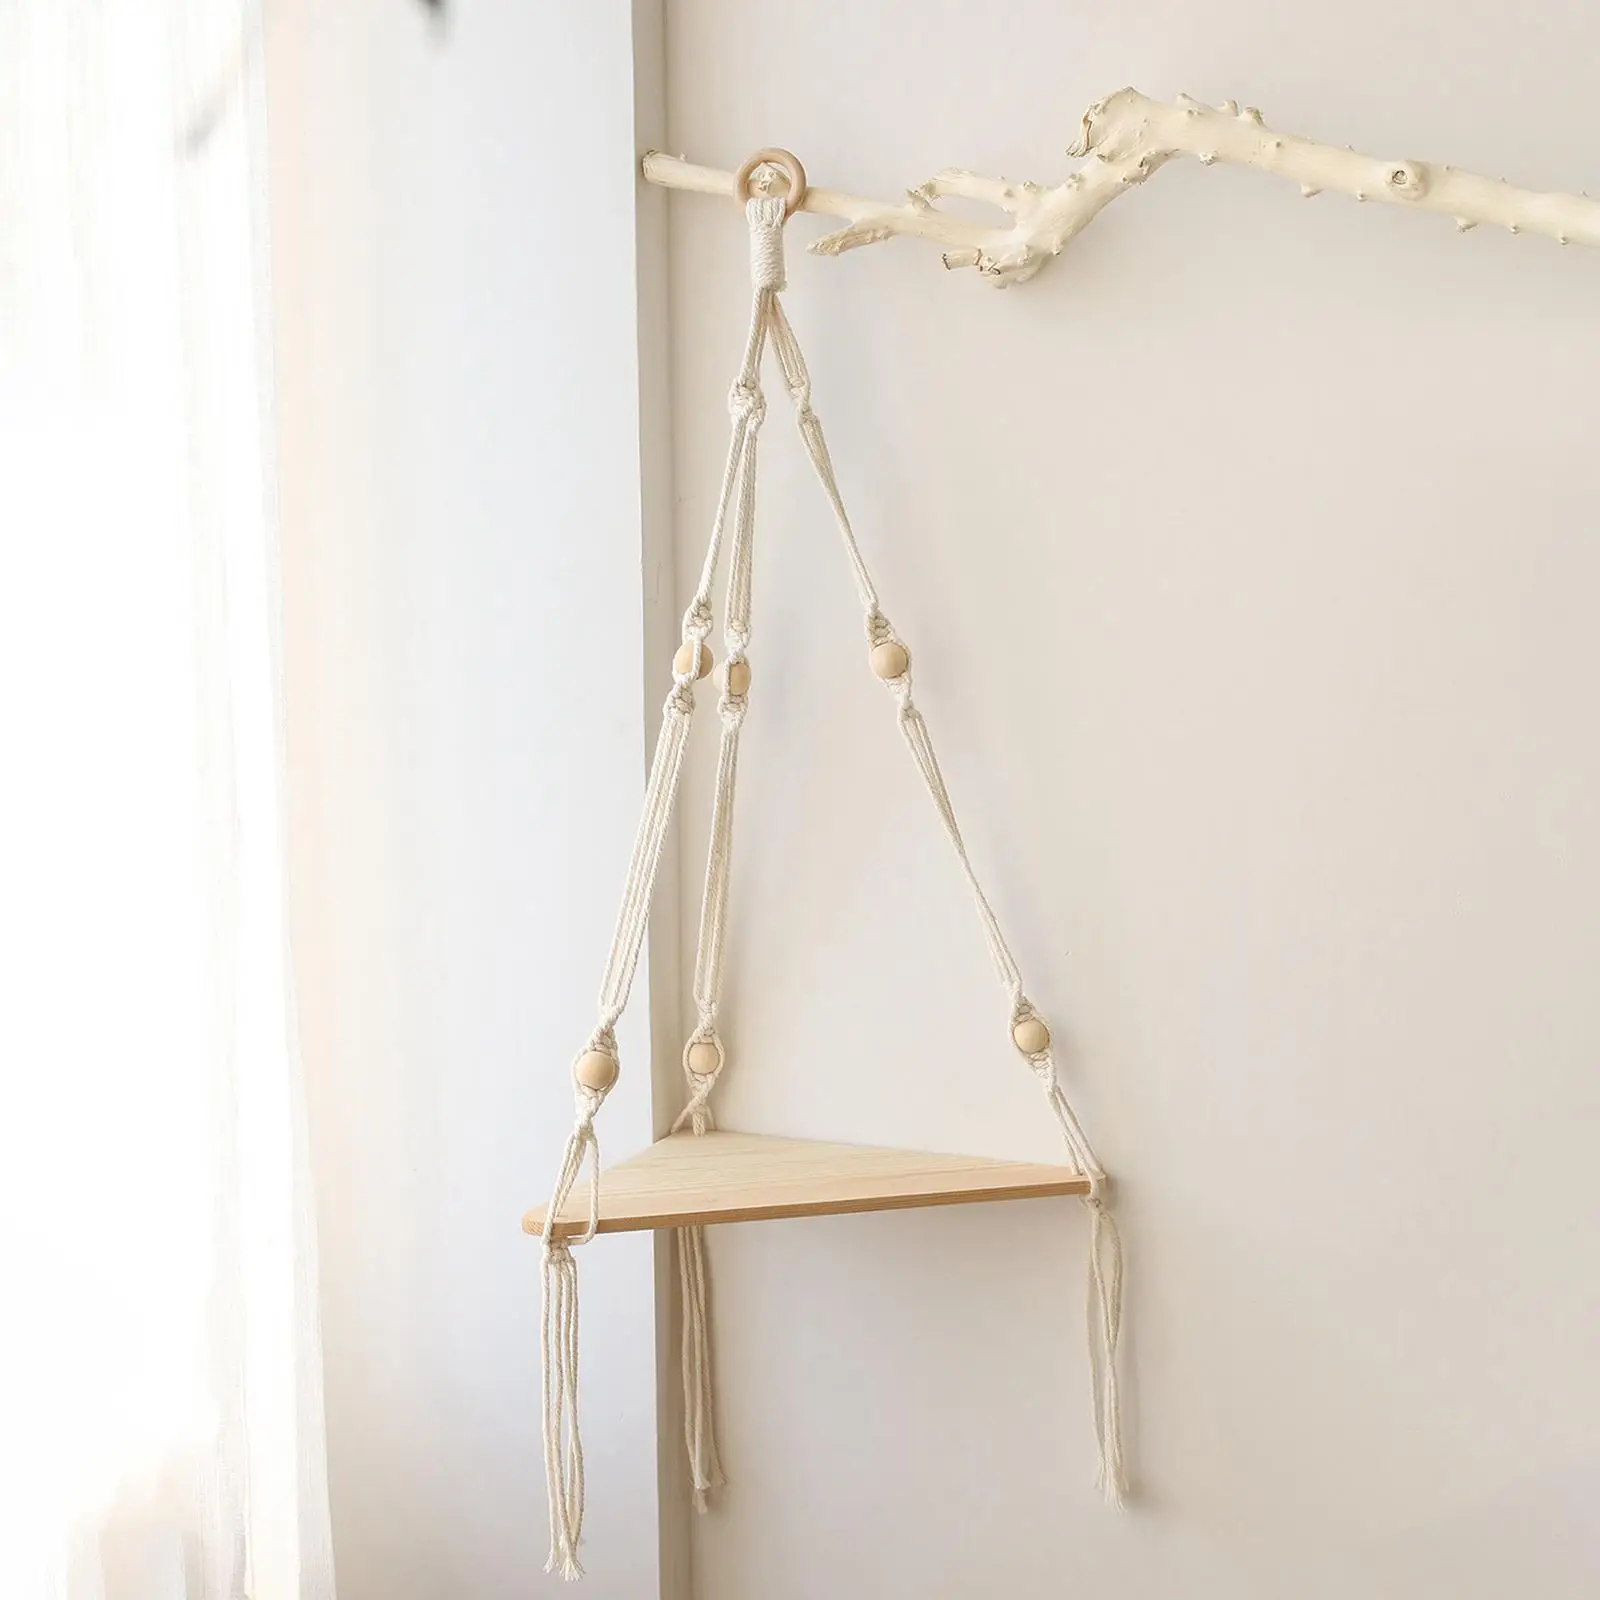 Macrame Wall Hanging Shelf Wood Wall Shelf with Woven Rope Bohemian Triangular